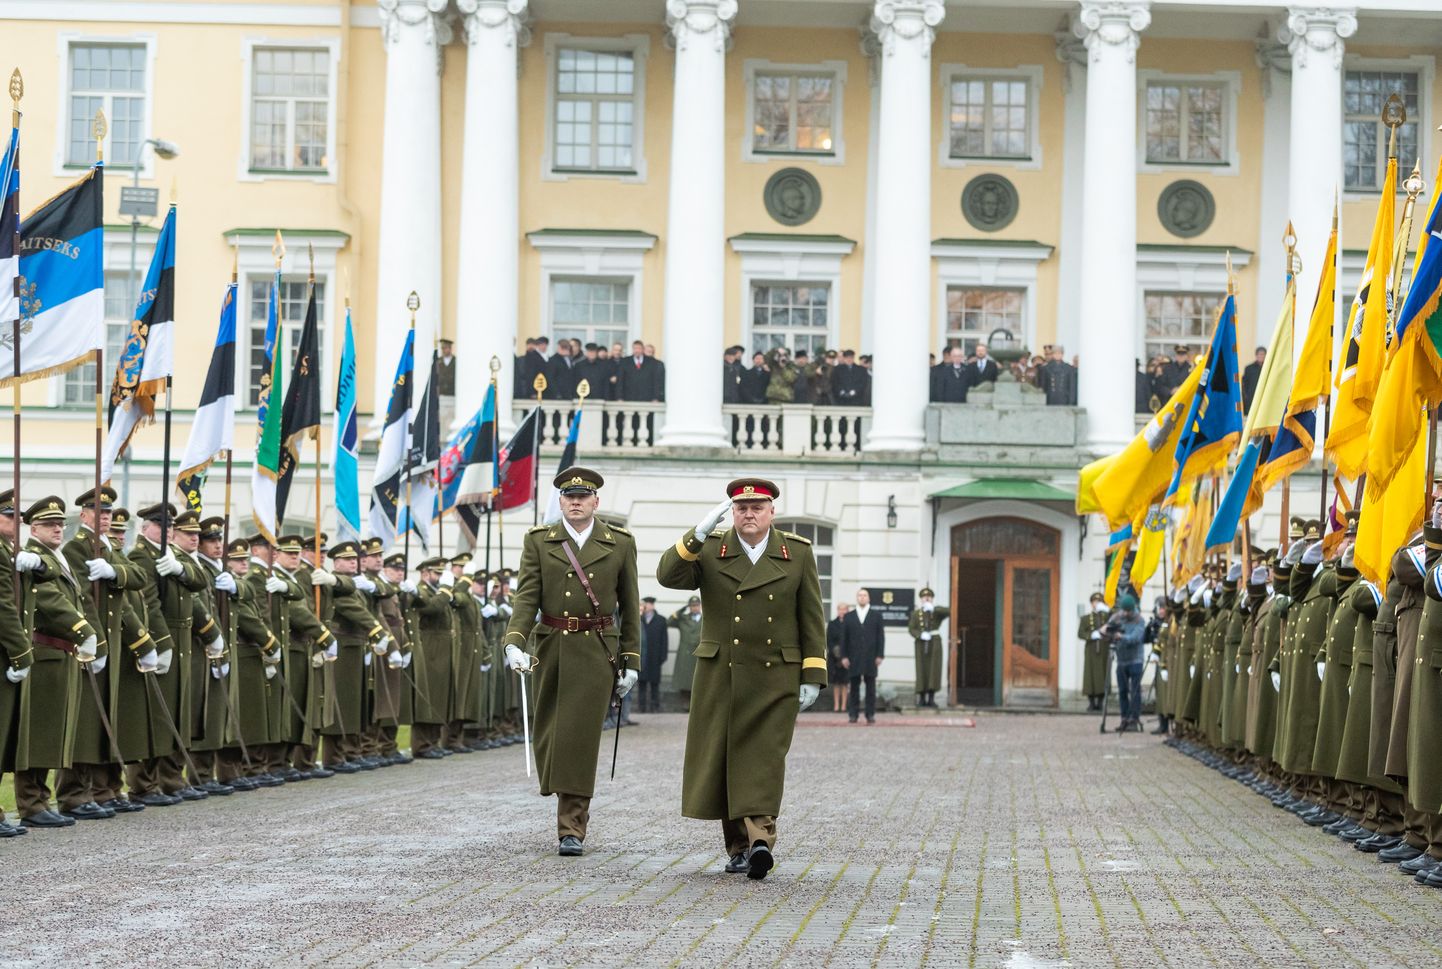 Tallinn, 04.12.2018
Kaitseväe juhataja vahtuse tseremoonia peastaabis. Kindral Riho Terraselt võttis ameti üle kindral Martin Herem.
FOTO: MIHKEL MARIPUU/EESTI MEEDIA